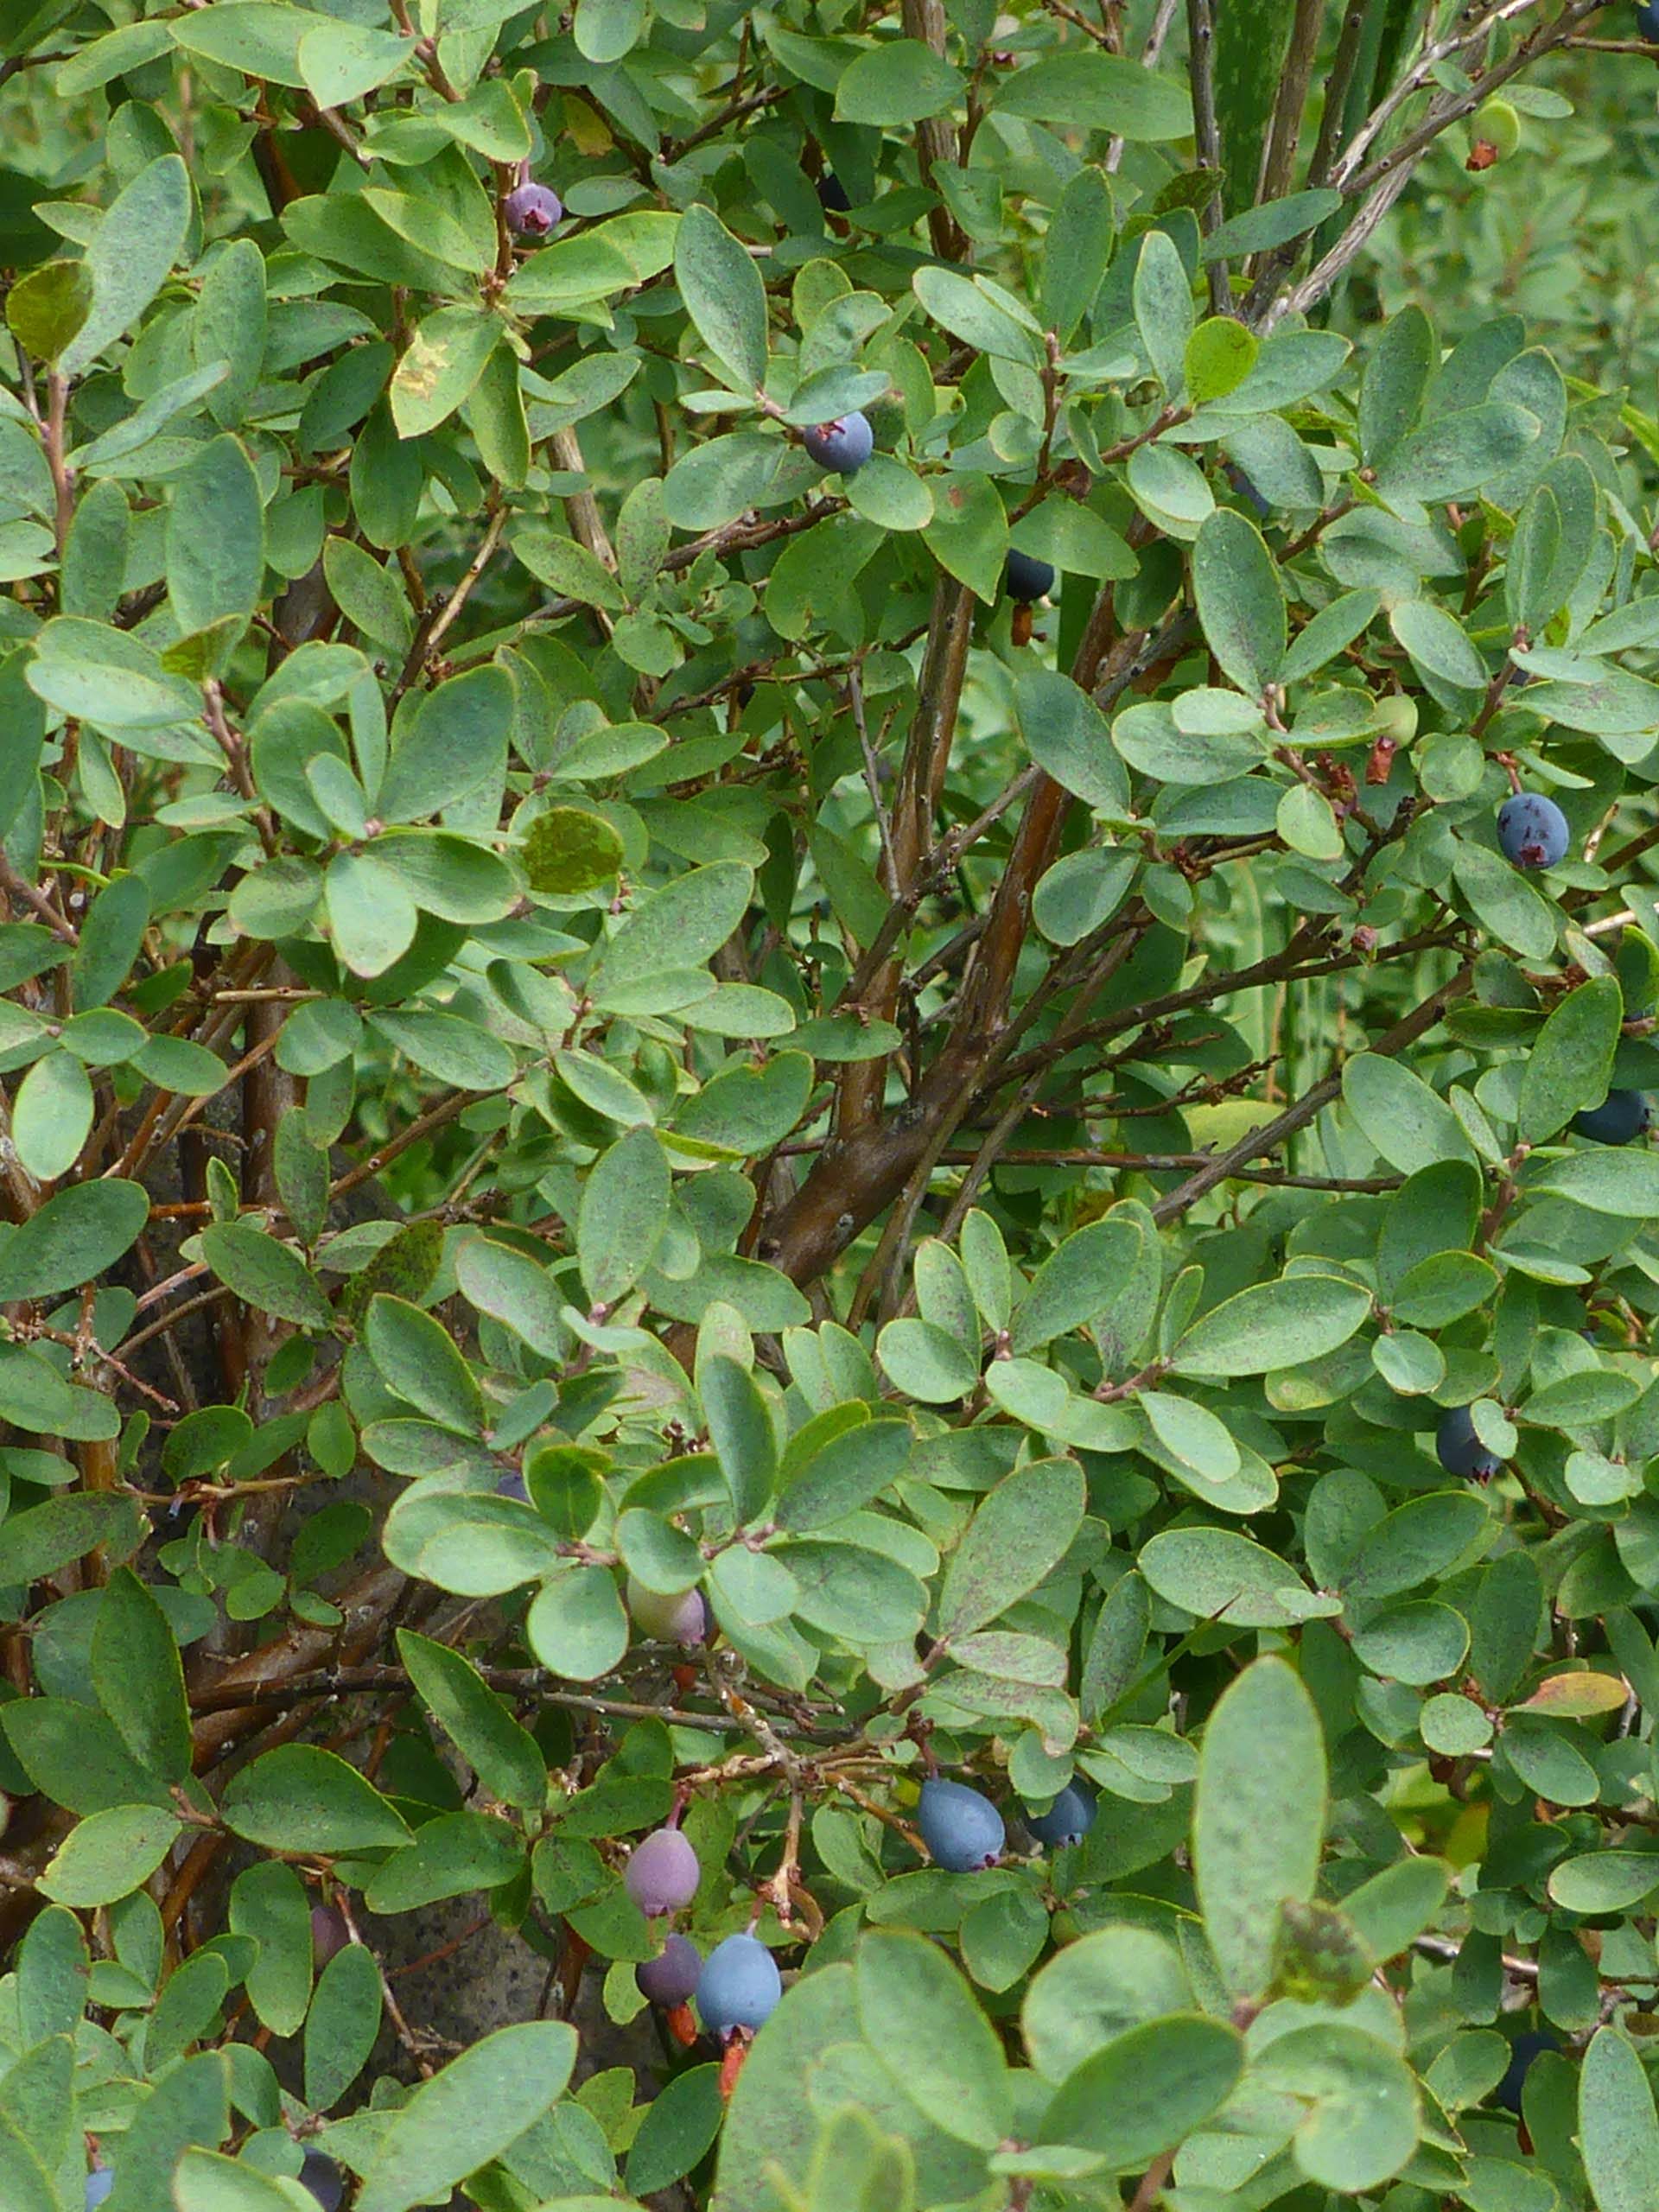 Western blueberry in fruit. D. Burk.